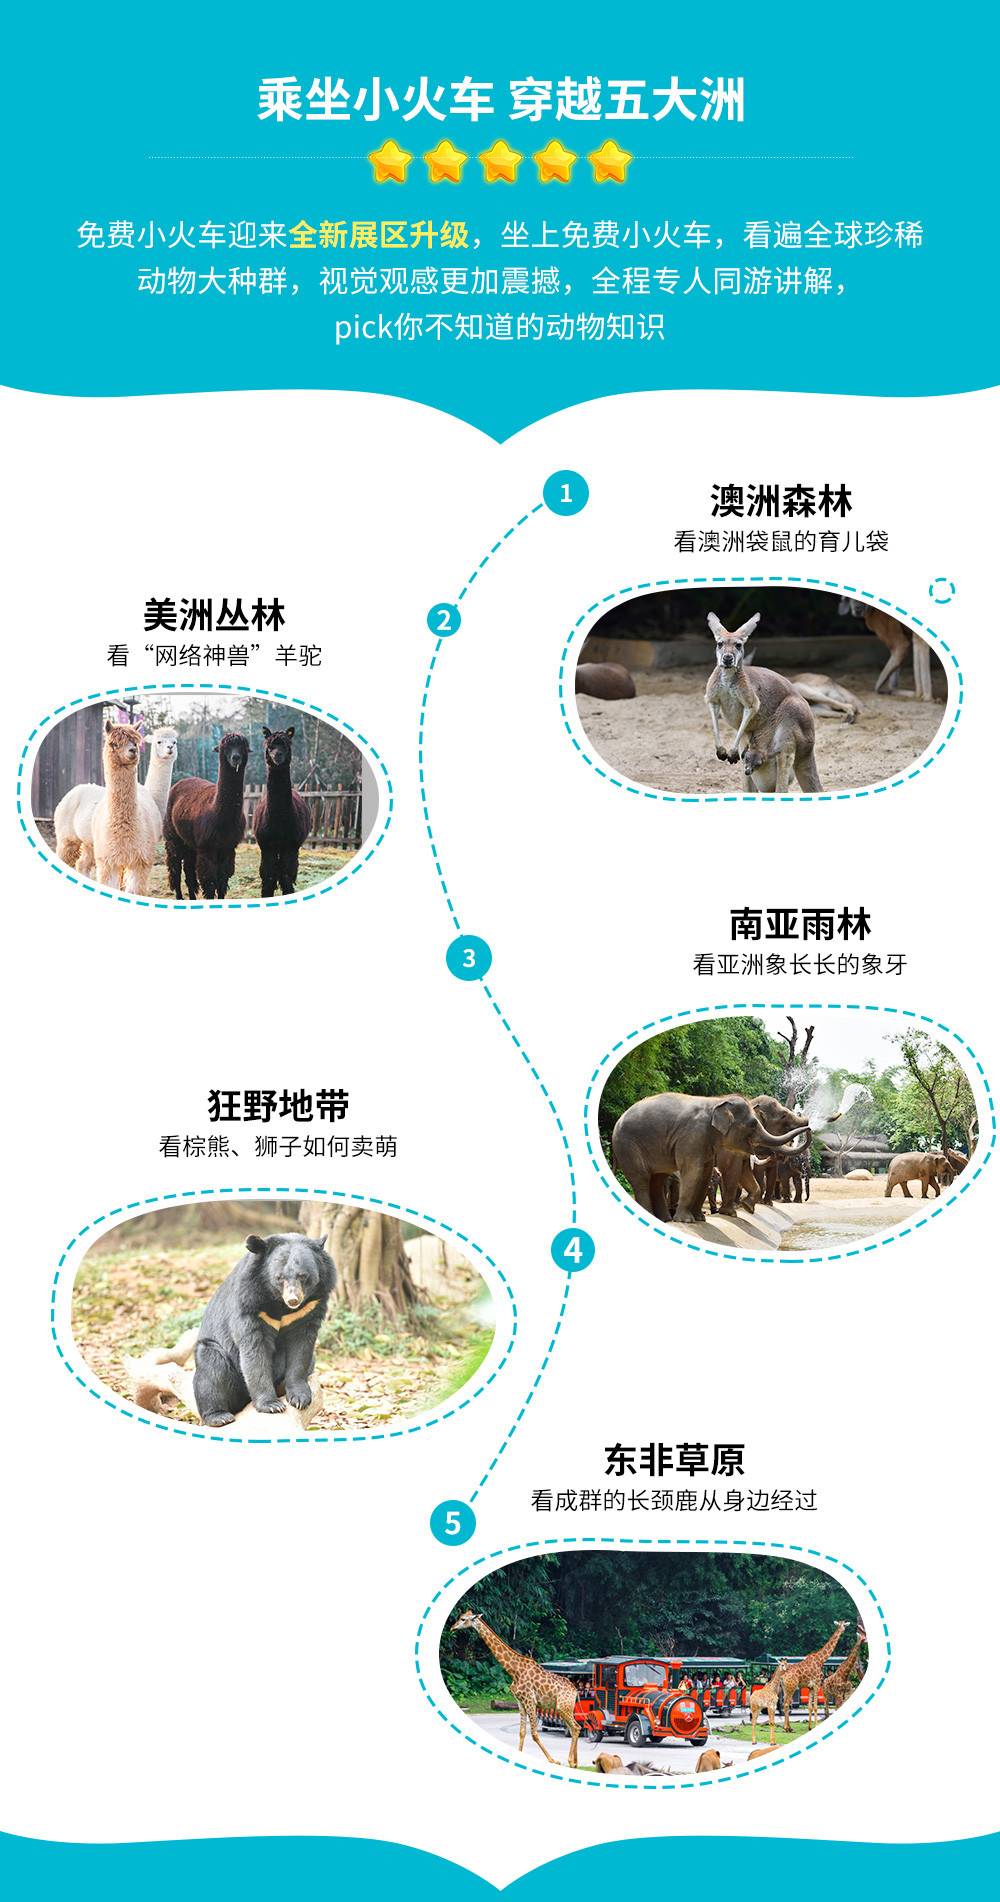 【2023上半年】广州长隆野生动物世界特定日标准票